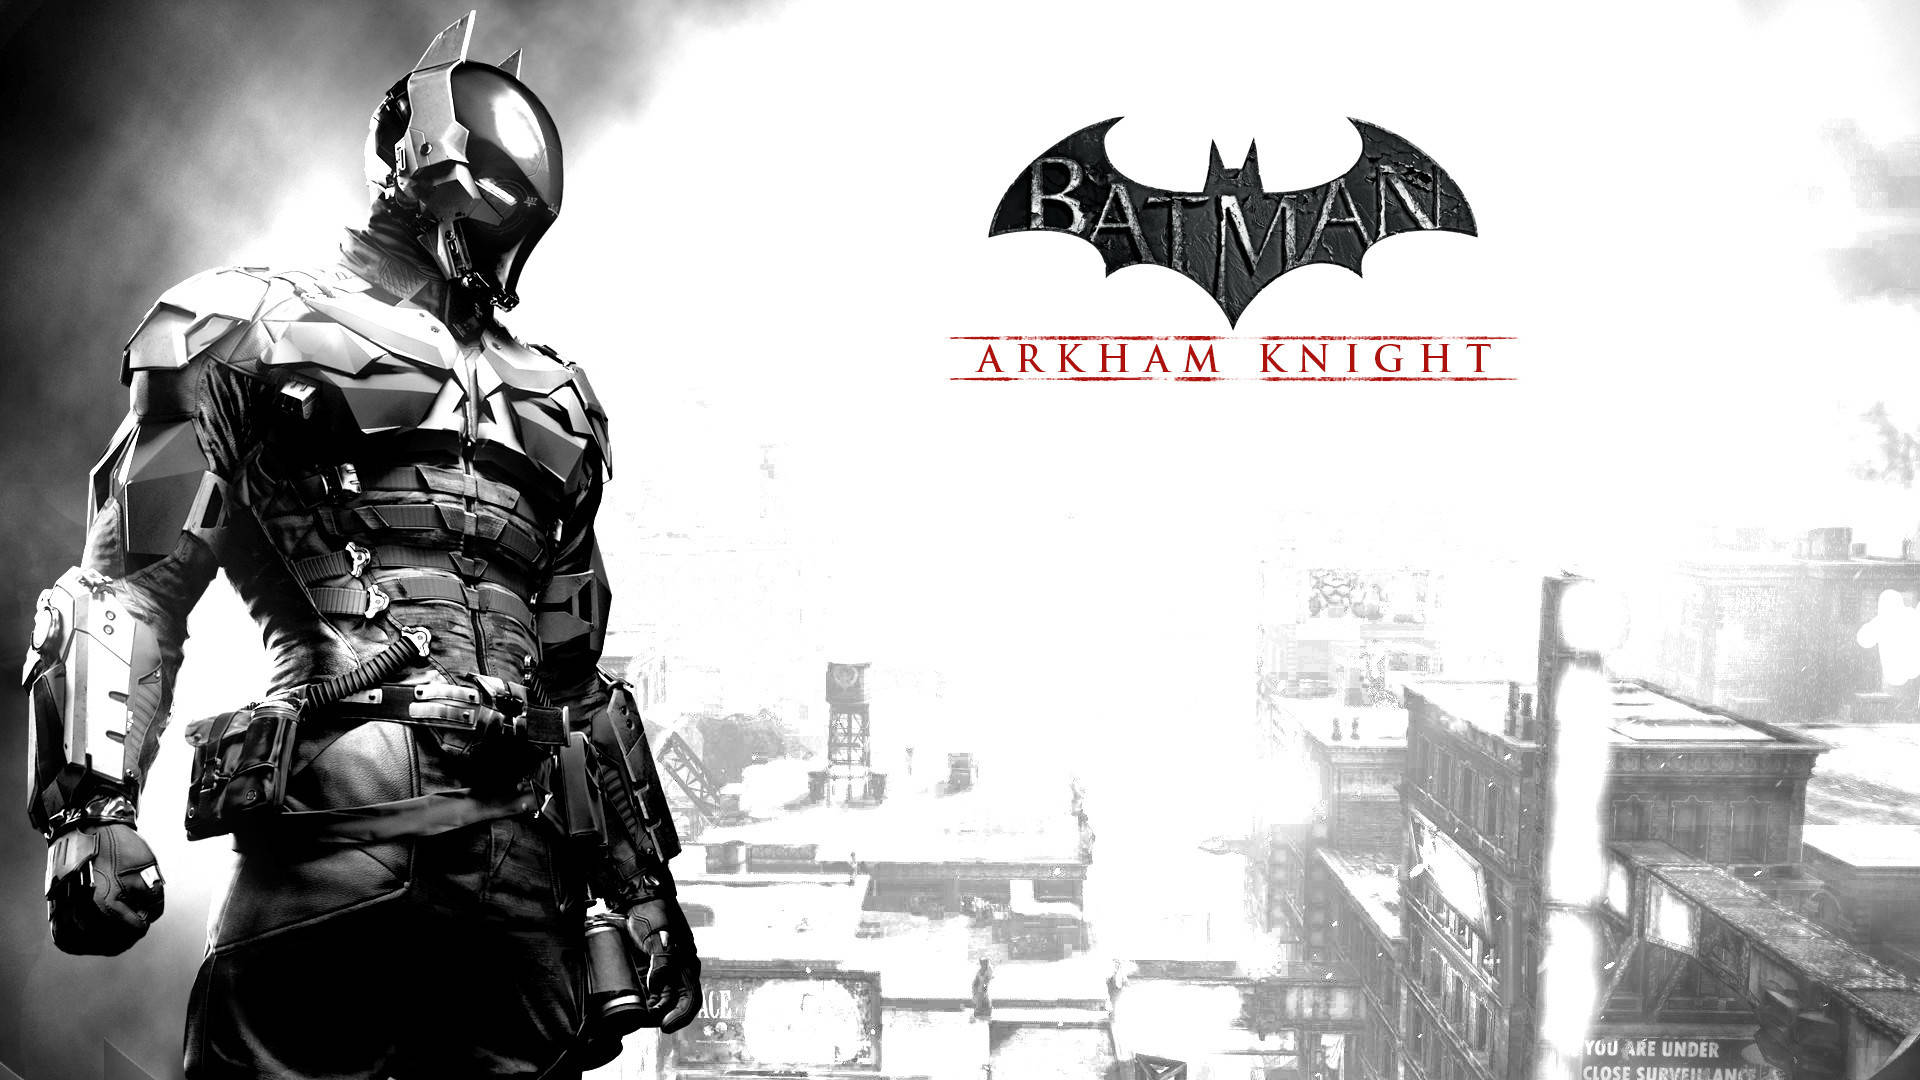 Tapetför Dator Eller Mobil: Batman Arkham Knight 4k. Wallpaper